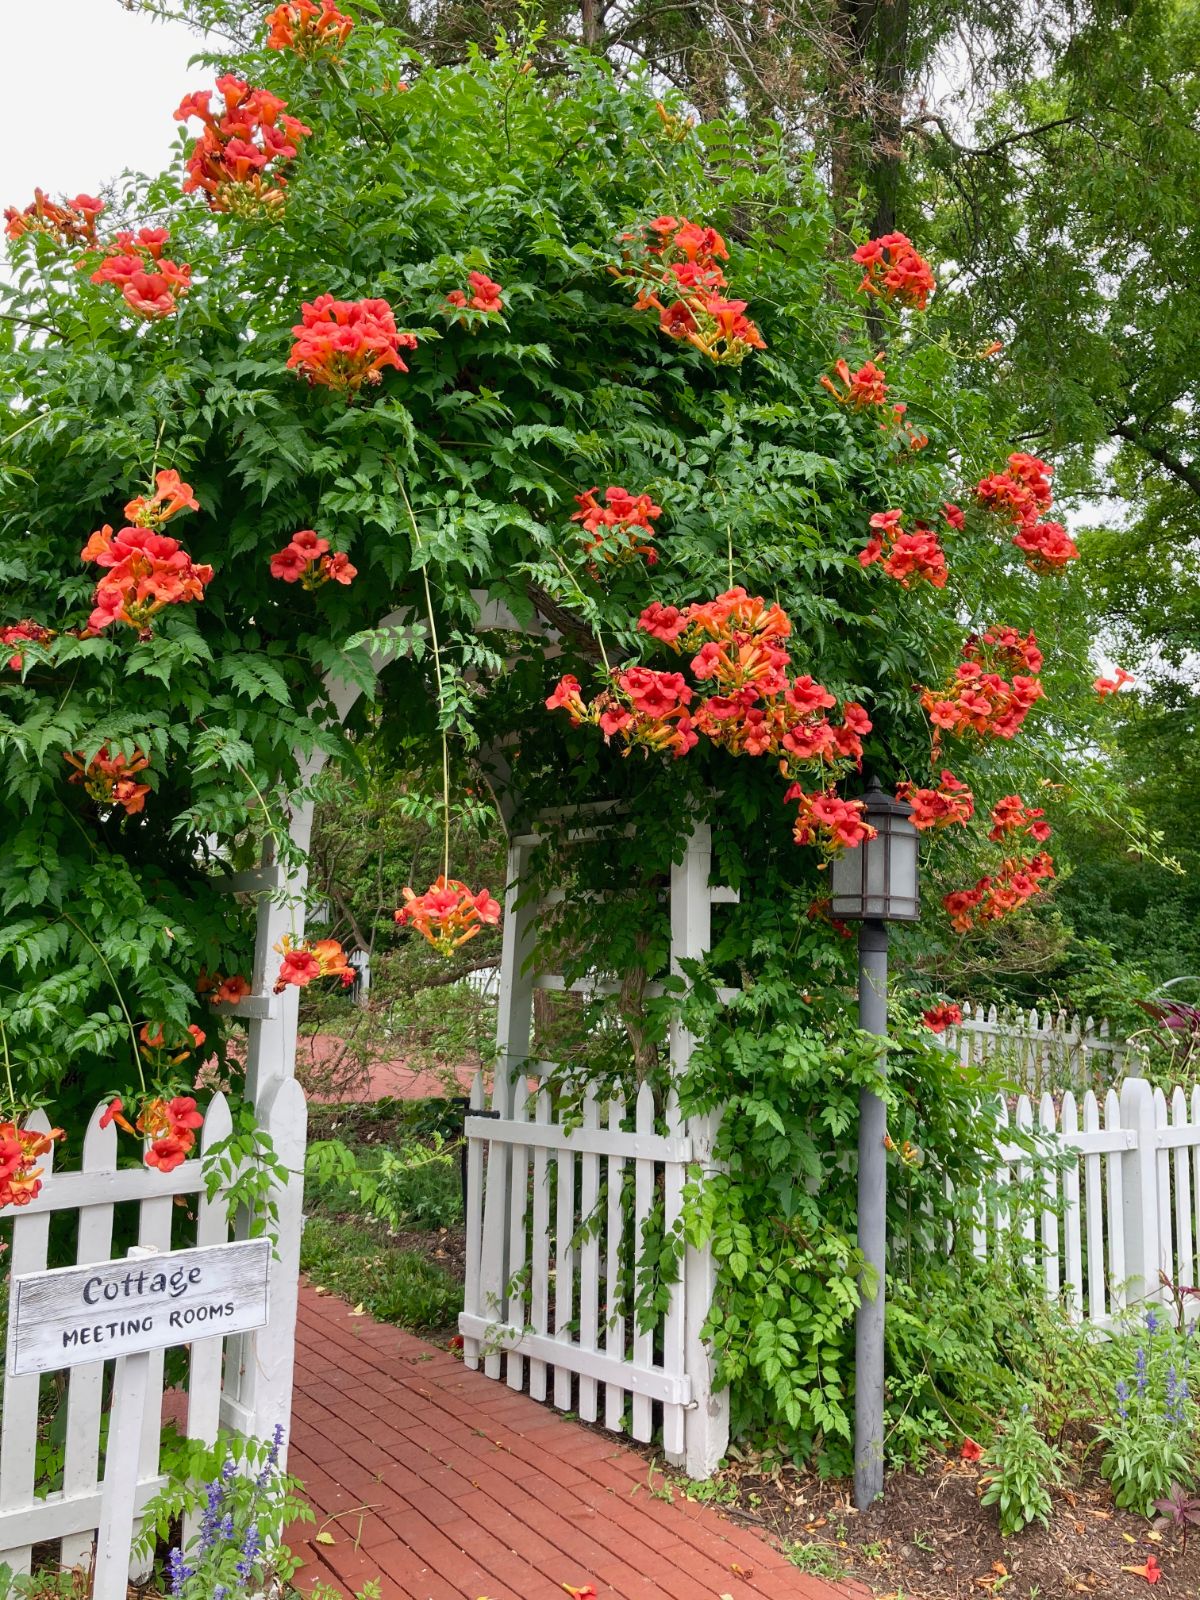 令人惊叹的喇叭藤蔓植物生长在白色的乔木和红色的花